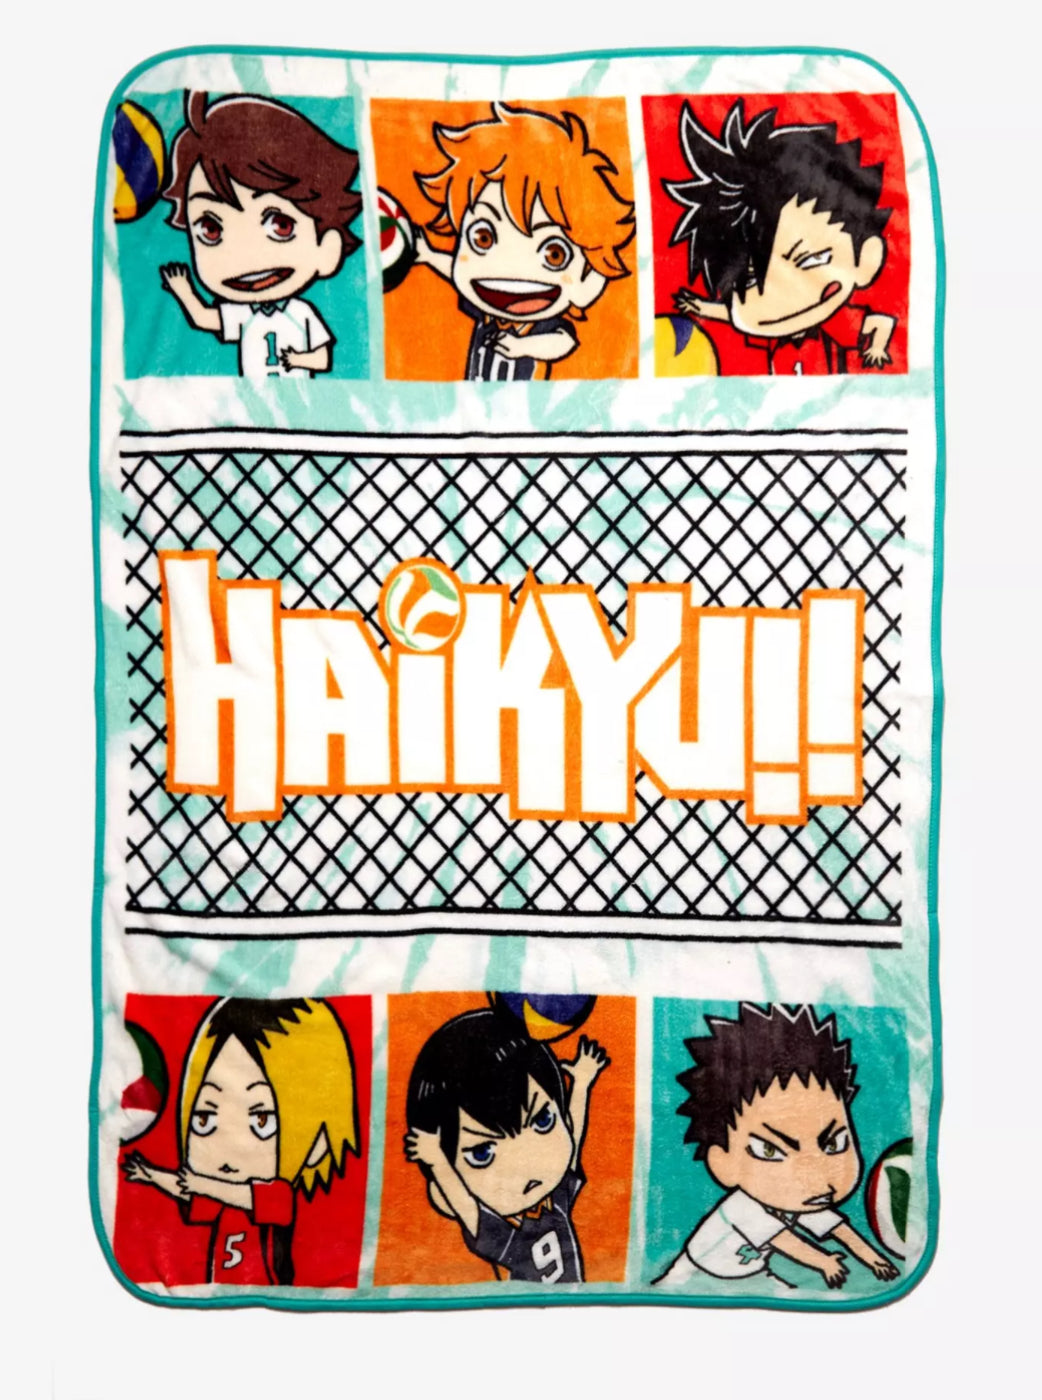 Haikyu!! Chibi Team Throw Blanket